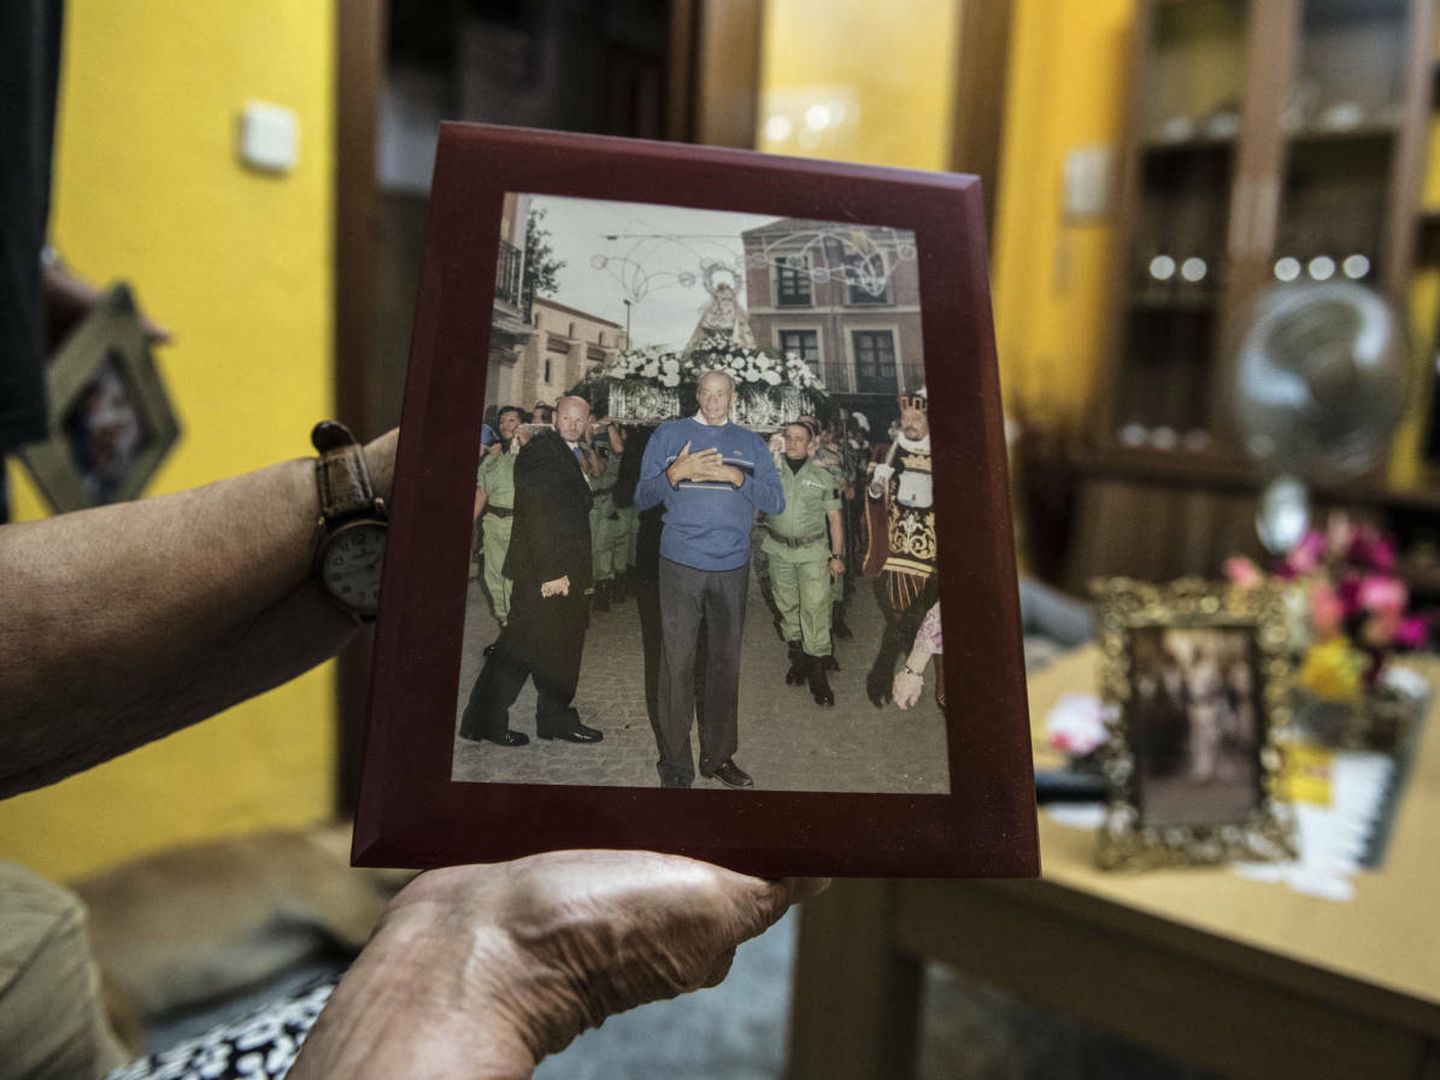 María Luisa sujeta una imagen de la Brigada de Paracaidistas, a quienes limpiaba sus uniformes. (N. L. P.)